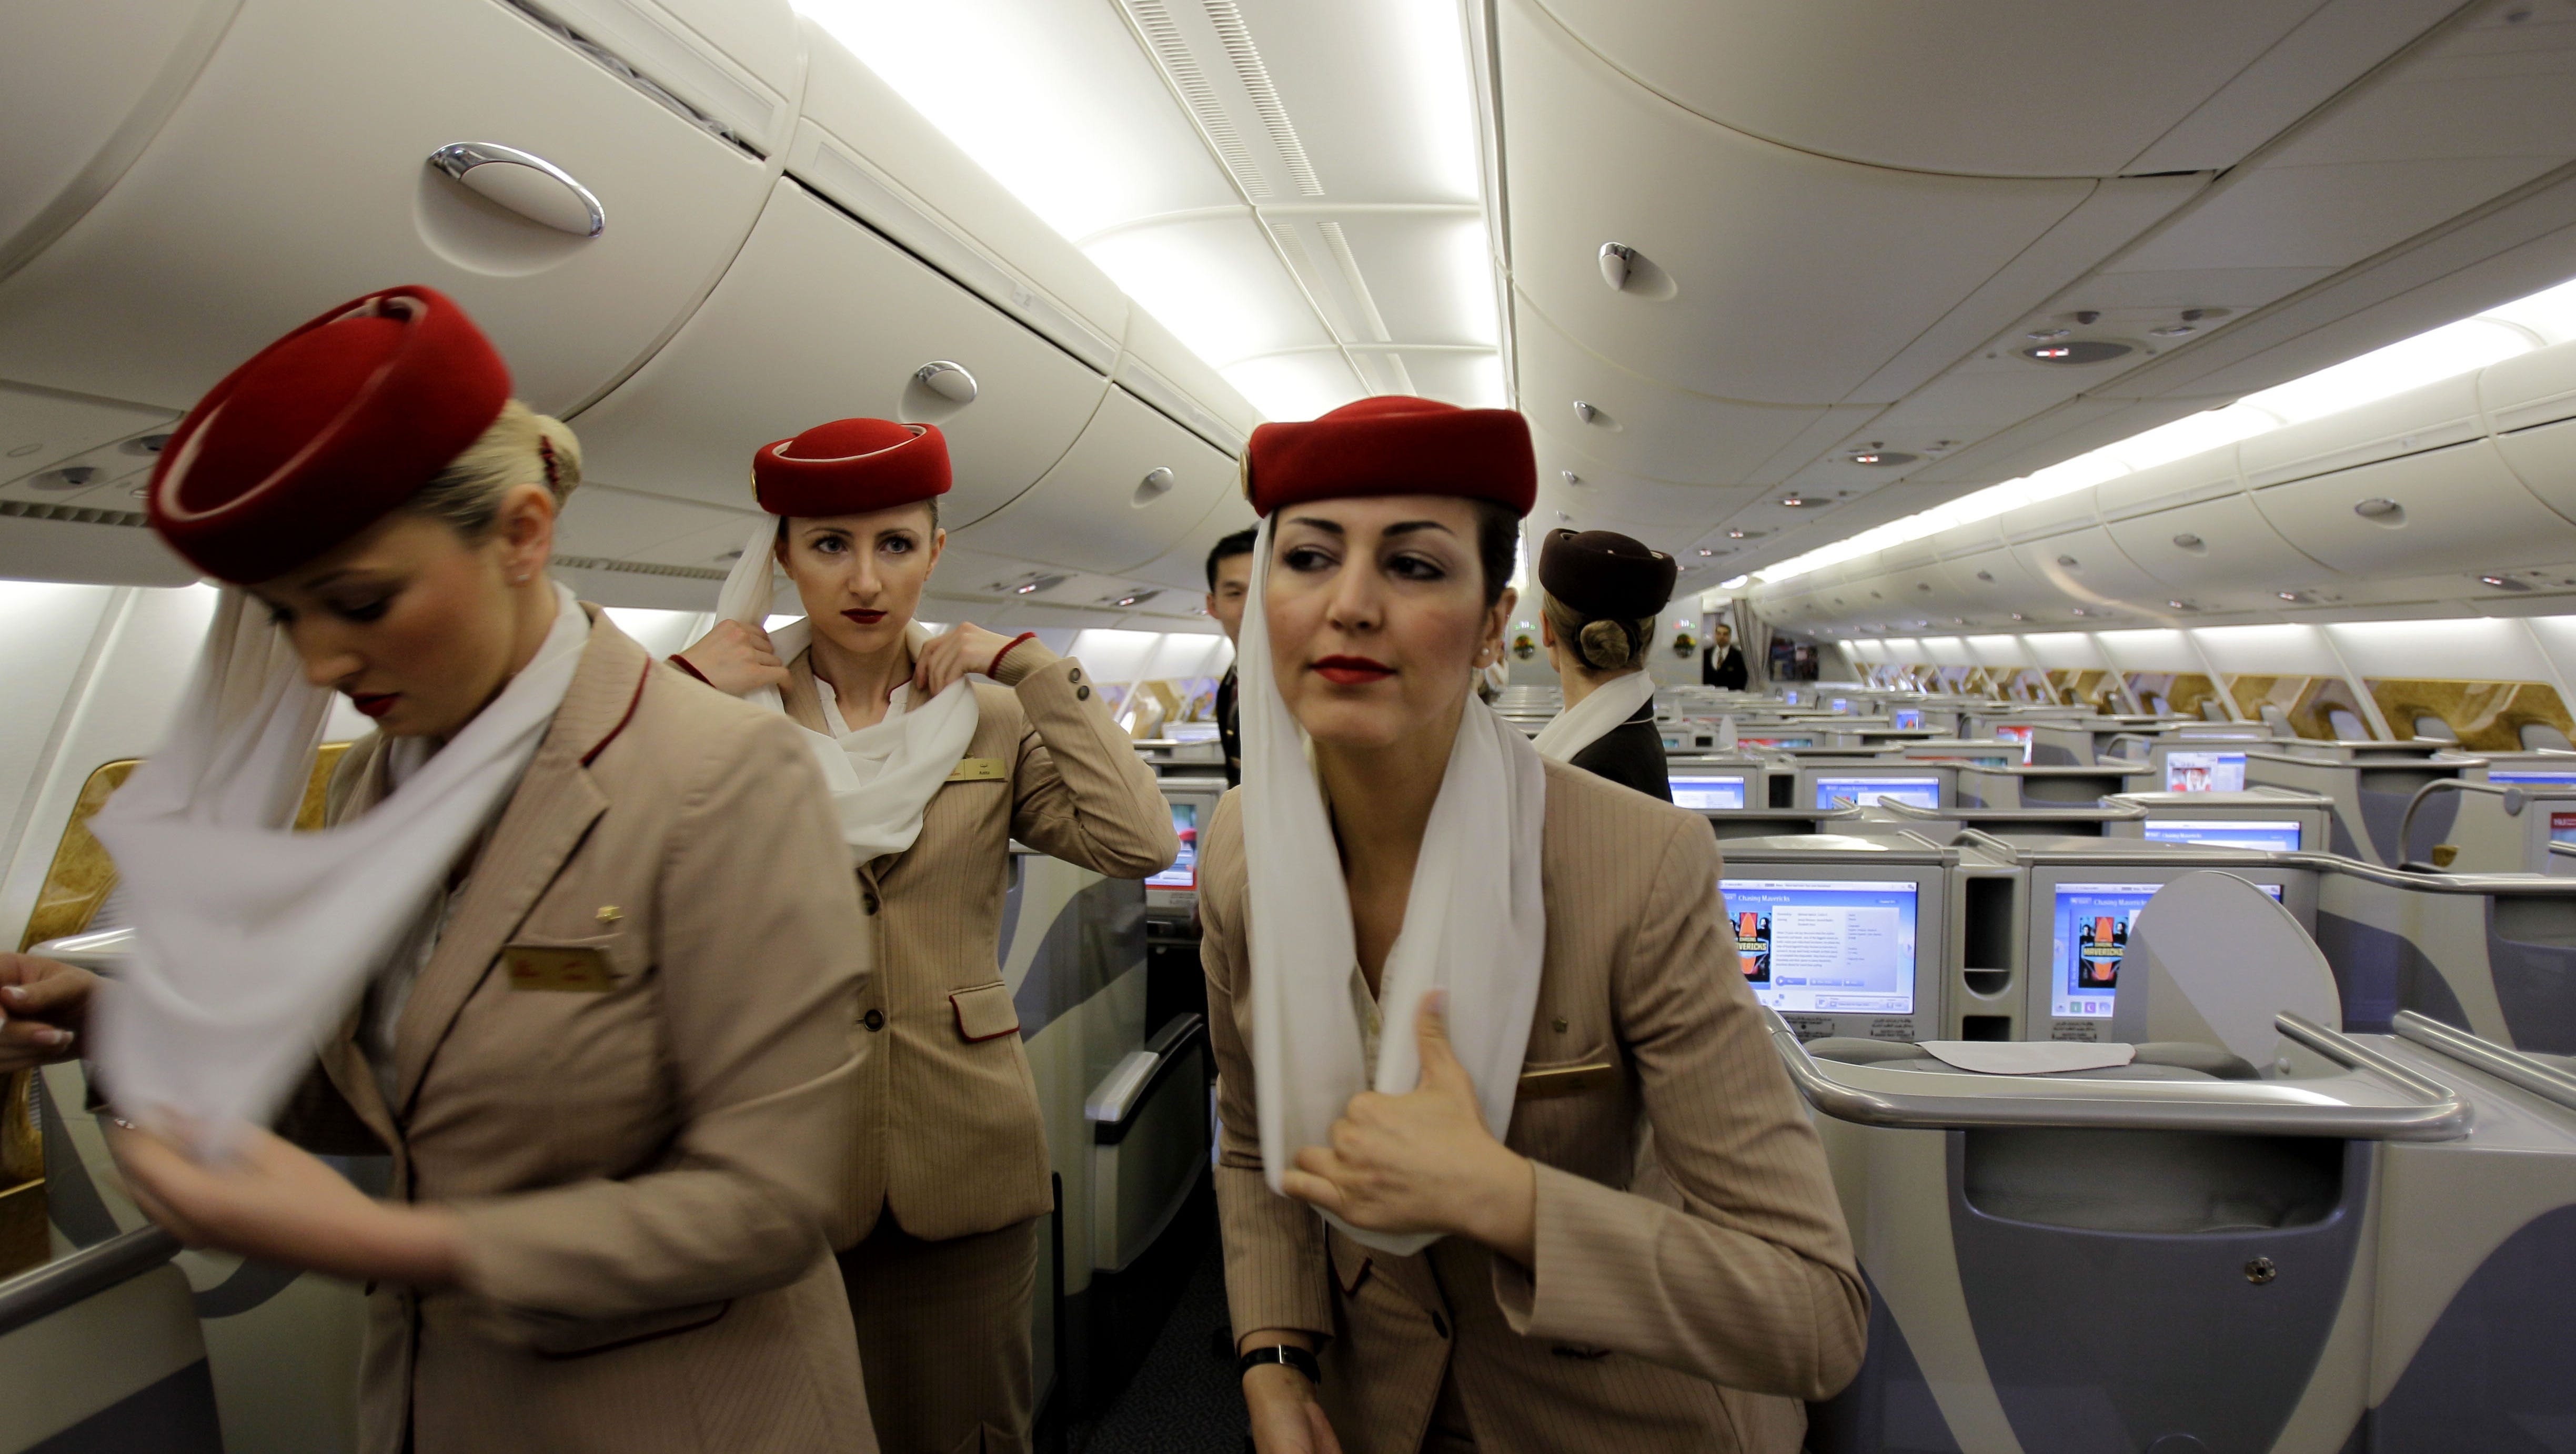 Сайт эмиратские авиалинии. А380 Эмирейтс стюардессы. Дубай авиакомпания Emirates Airlines. Экипаж Эмирейтс 380. Аэробус а380 Эмирейтс стюардессы.